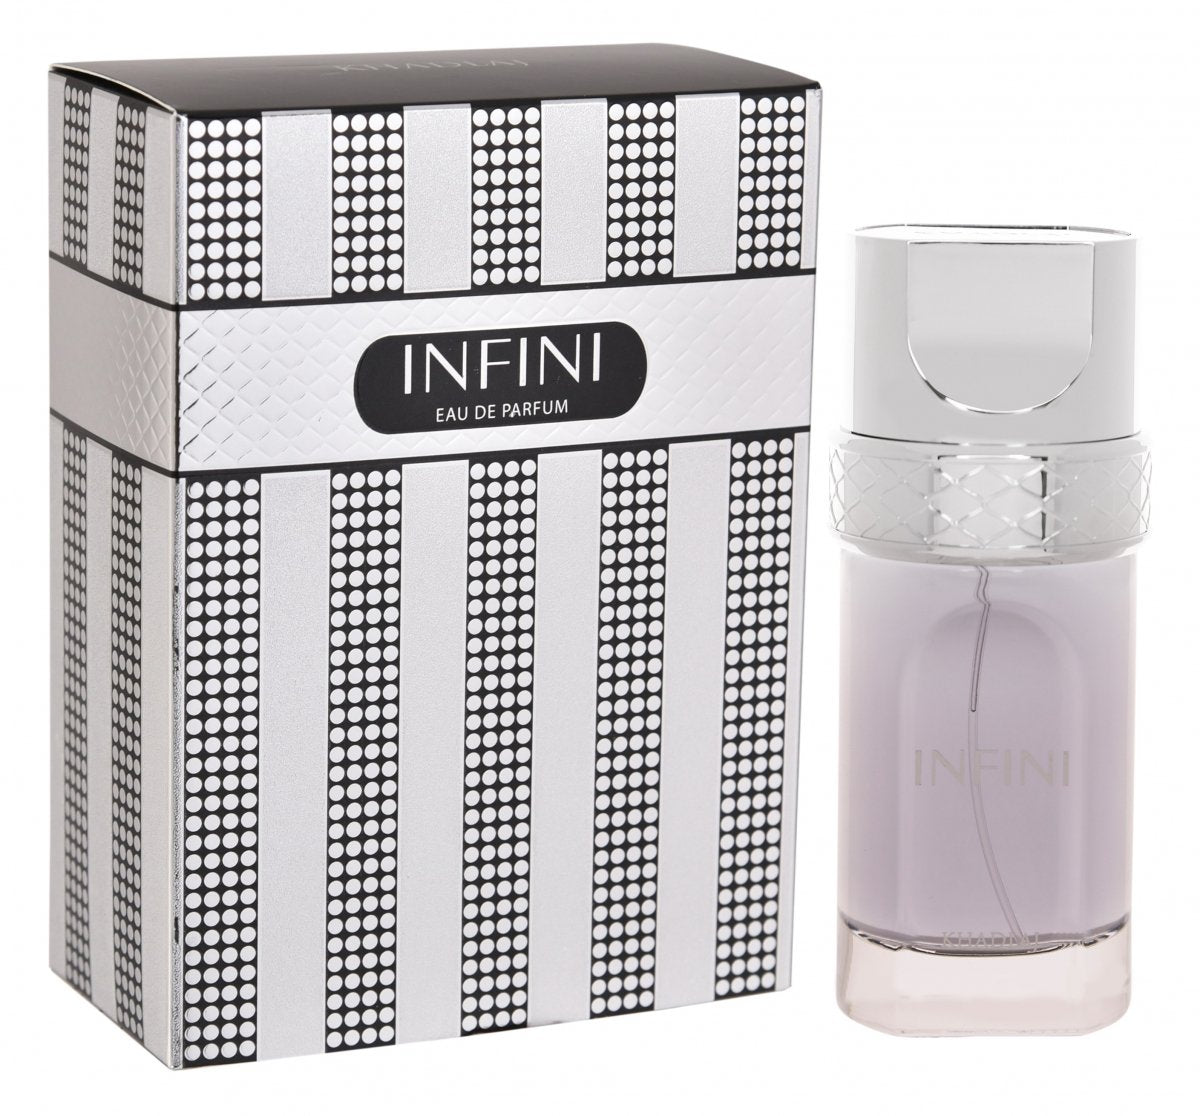 Infini EDP (100ml) spray perfume by Khadlaj | Khan El Khalili